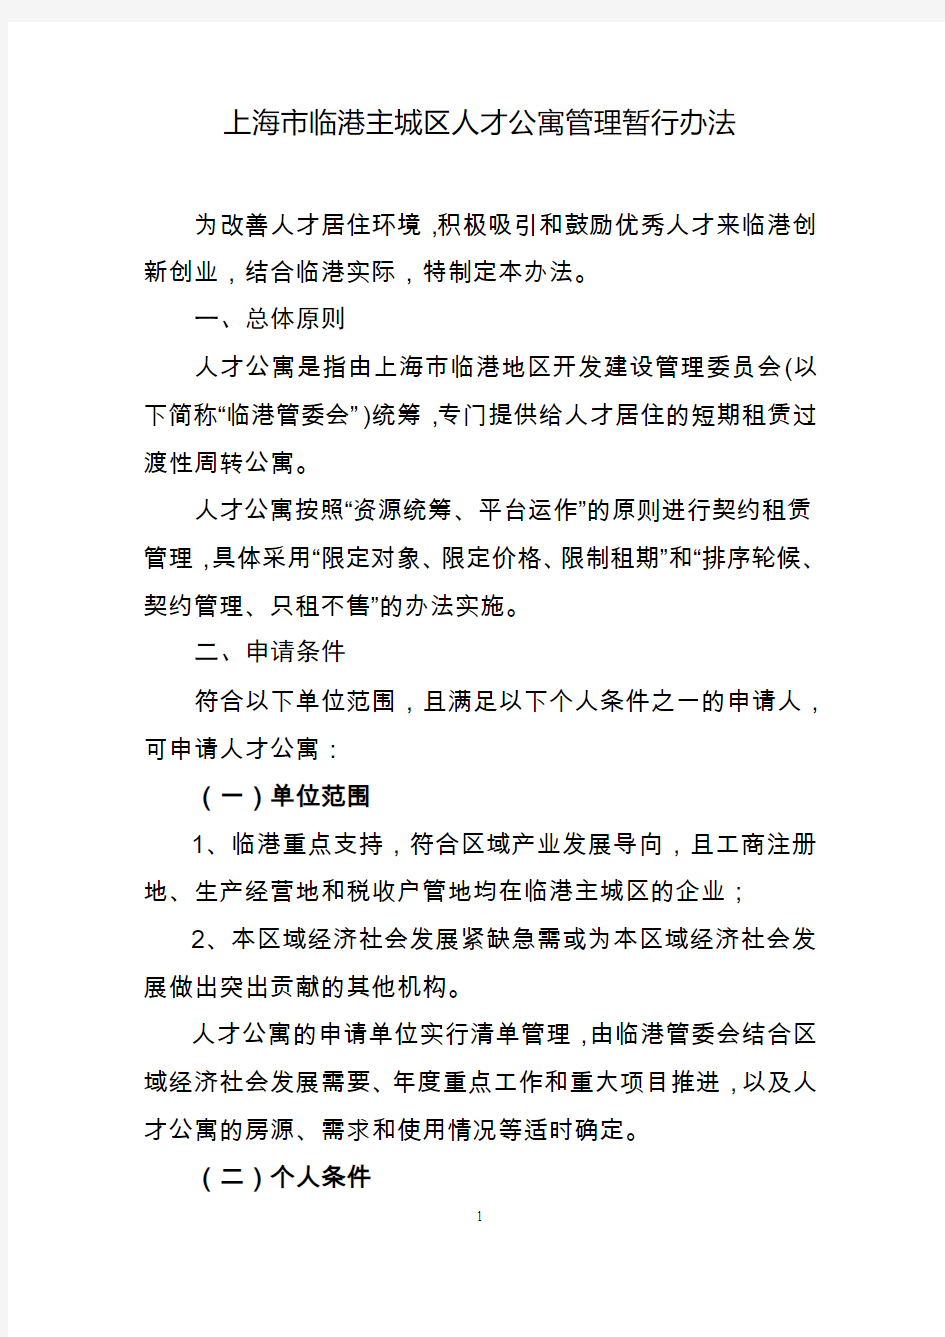 上海临港主城区人才公寓管理暂行办法